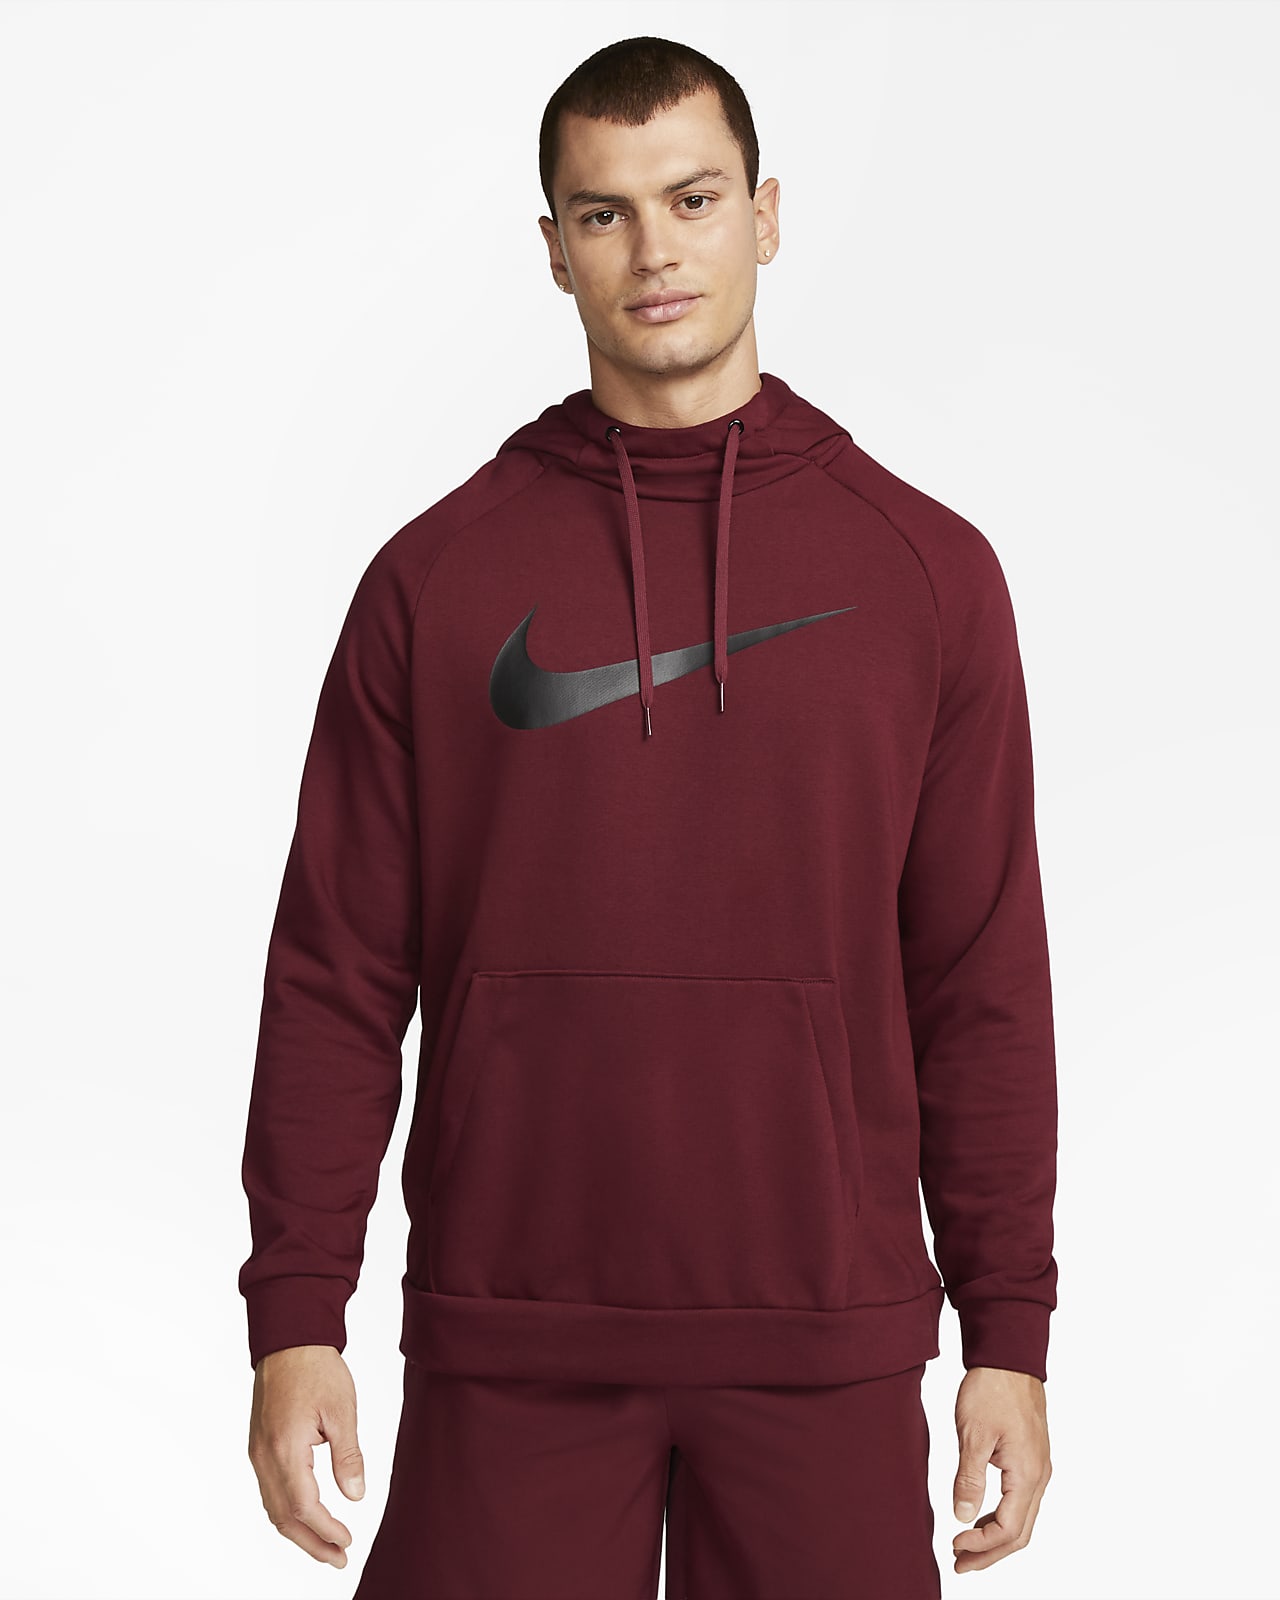 Felpa pullover da training con cappuccio Nike Dri-FIT – Uomo